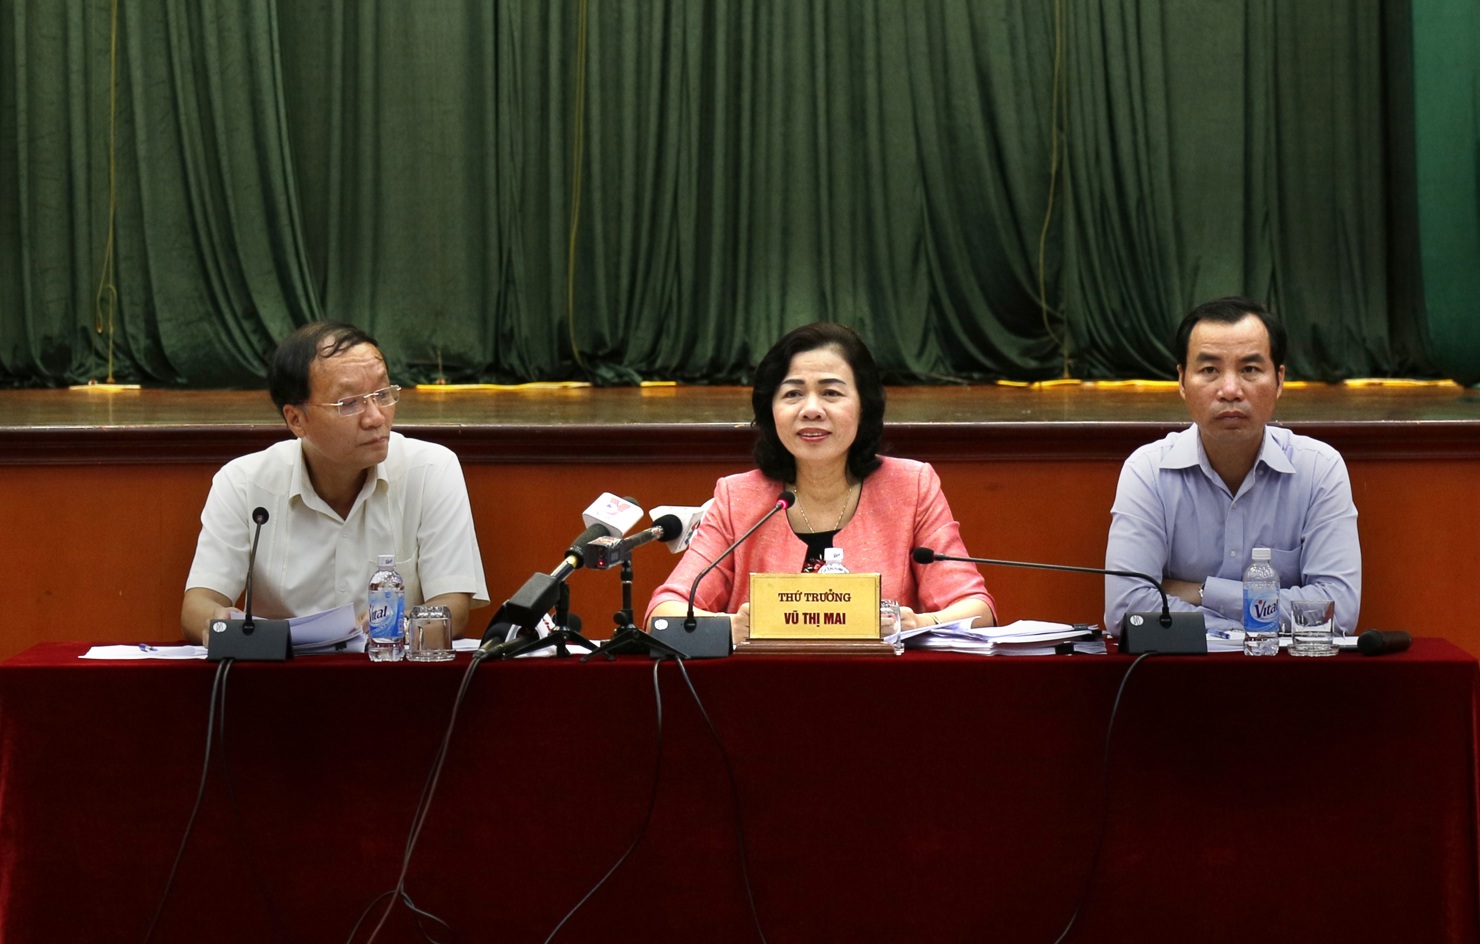 Thứ trưởng Bộ Tài chính Vũ Thị Mai phát biểu tại buổi họp báo chuyên đề chiều này 19/7/2018 của Bộ Tài chính.